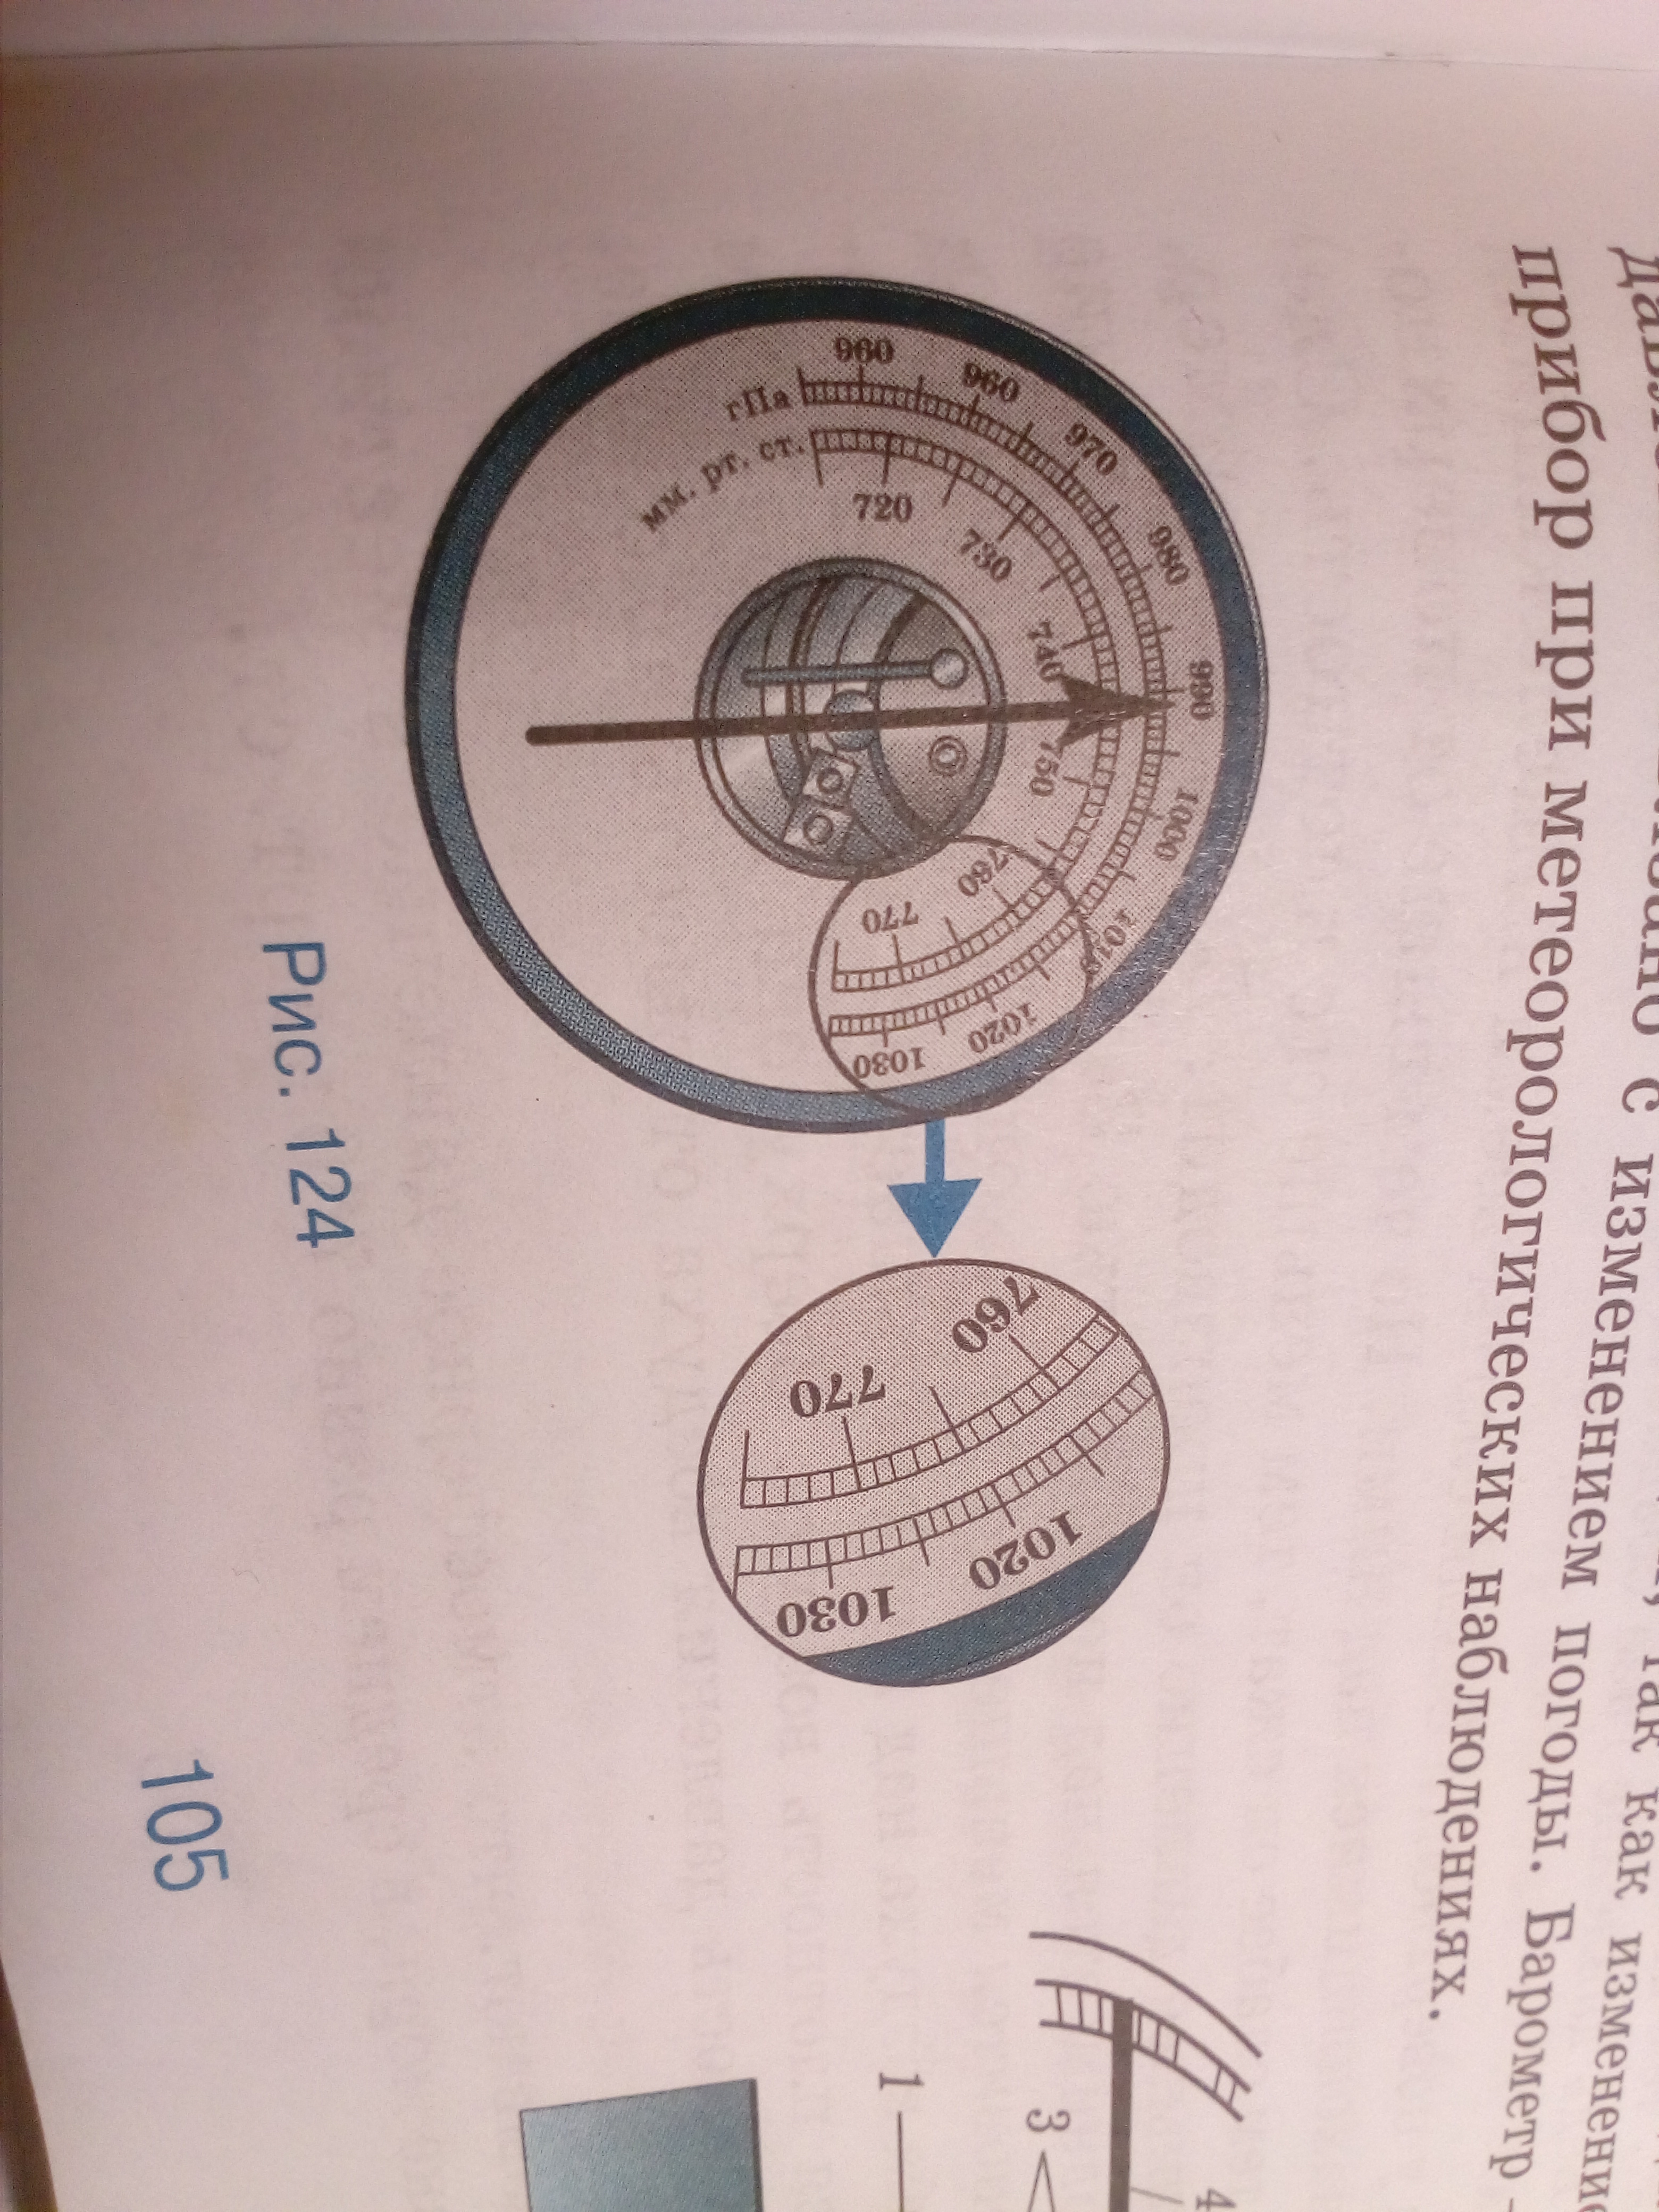 Внешняя шкала барометра анероида проградуирована в. Как называется прибор, изображённый на рисунке?. Б В каких единицах проградуированы его внешняя и внутренняя шкалы. В каких единицах проградуированы внешняя и внутренняя шкала.